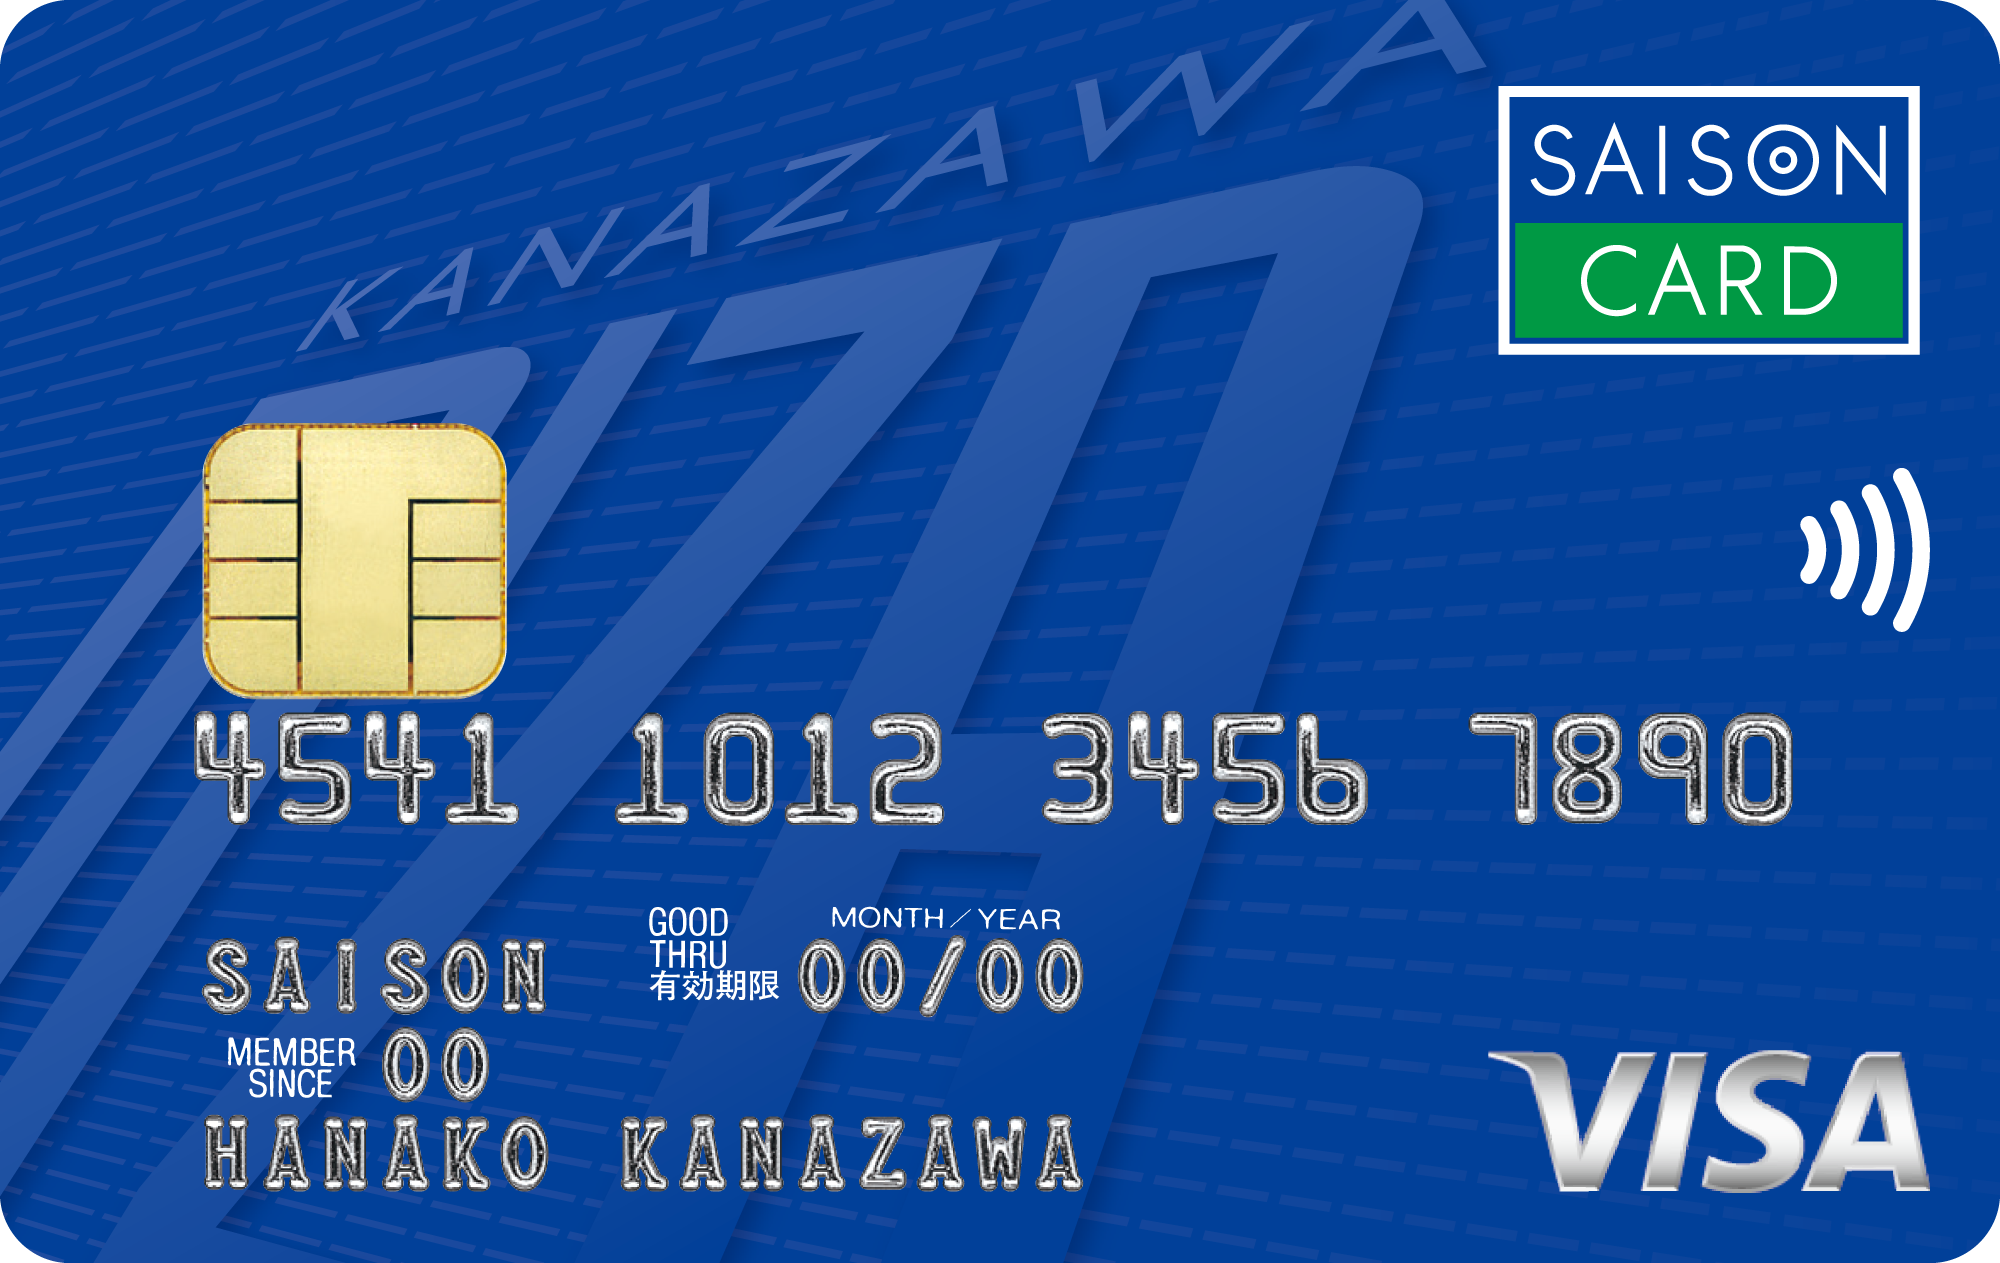 「エムザセゾンカード」の券面画像